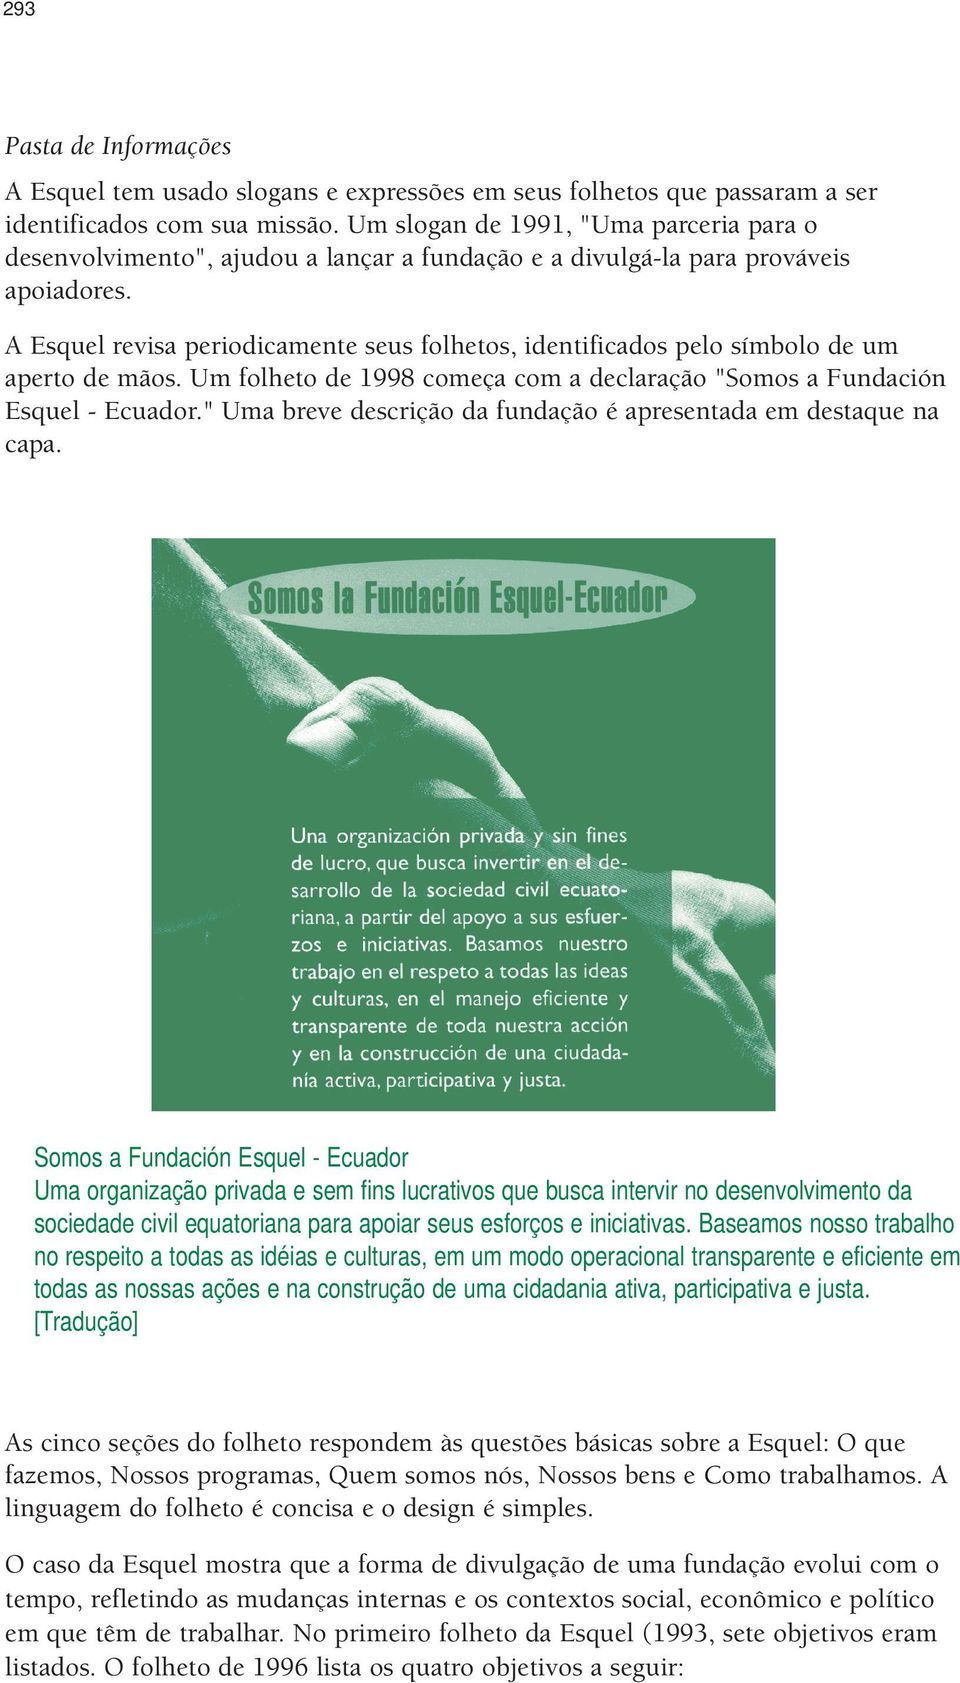 A Esquel revisa periodicamente seus folhetos, identificados pelo símbolo de um aperto de mãos. Um folheto de 1998 começa com a declaração "Somos a Fundación Esquel - Ecuador.